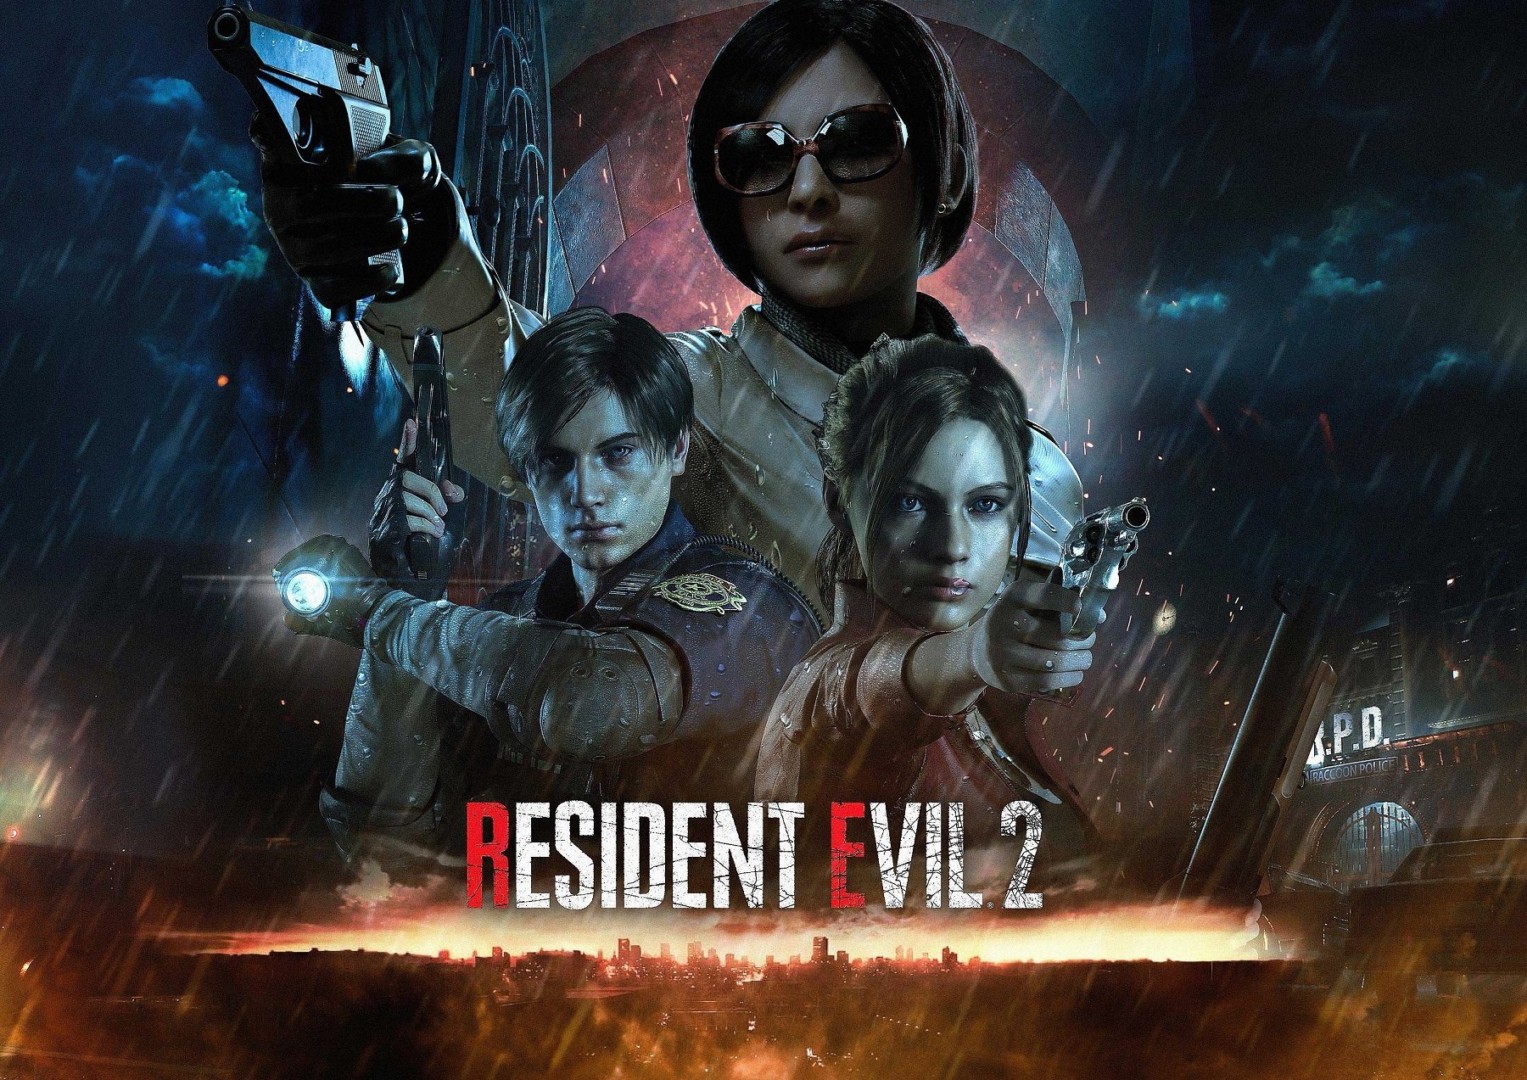 ¿Nuevos viejos récords? Resident Evil 2 Remake superó en ventas al juego original